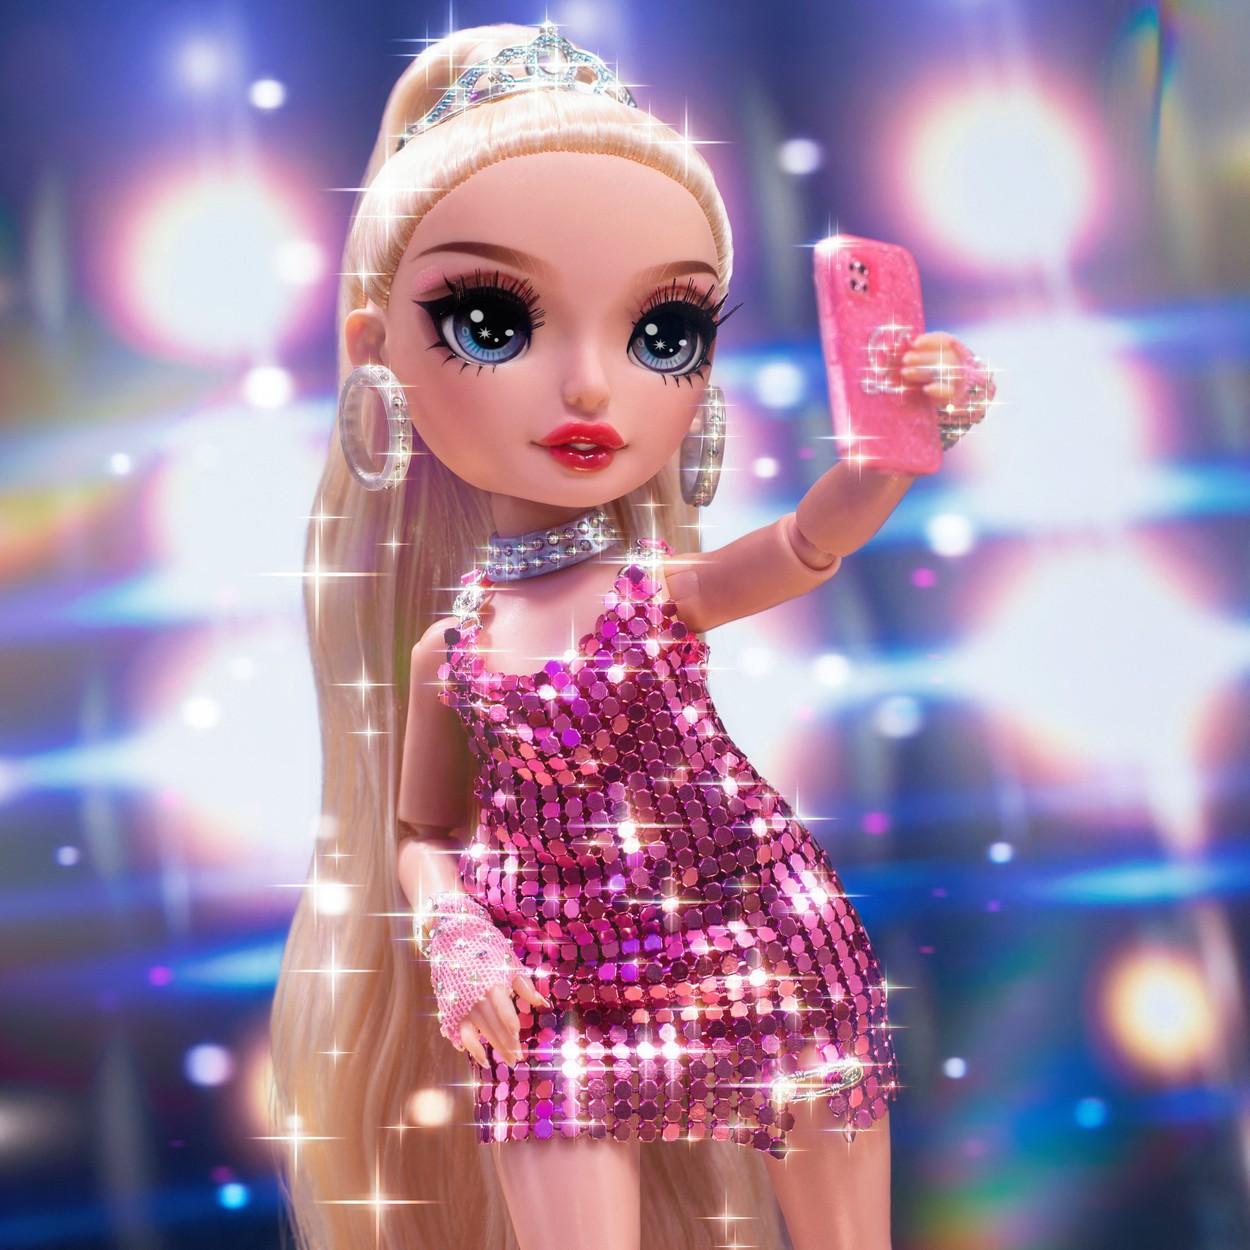 Varianta în miniatură a lui Paris Hilton, îmbrăcată într-o ținută roz cu paiete